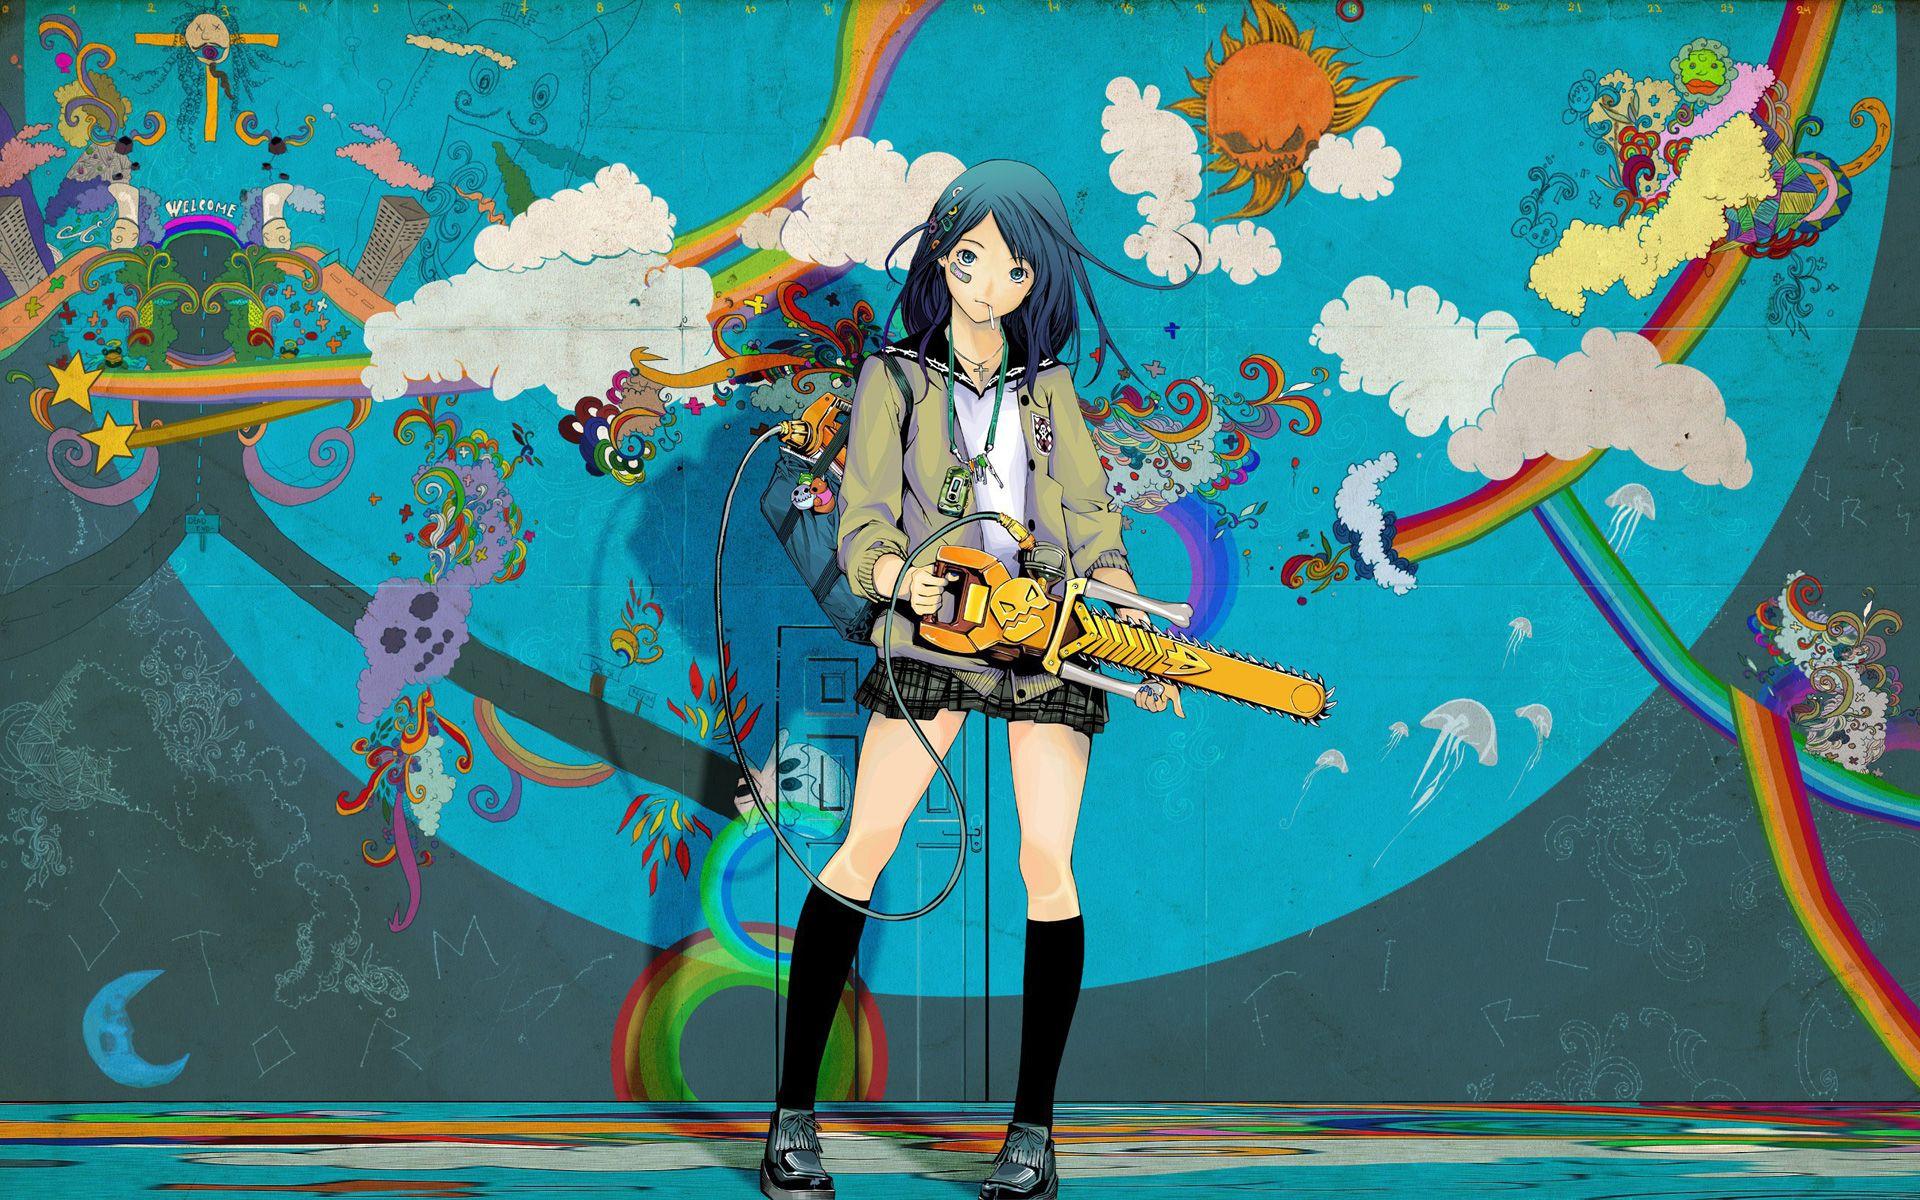 Wallpaper Power Anime Art, Anime Art, Anime, Art, Fan Art, Background -  Download Free Image